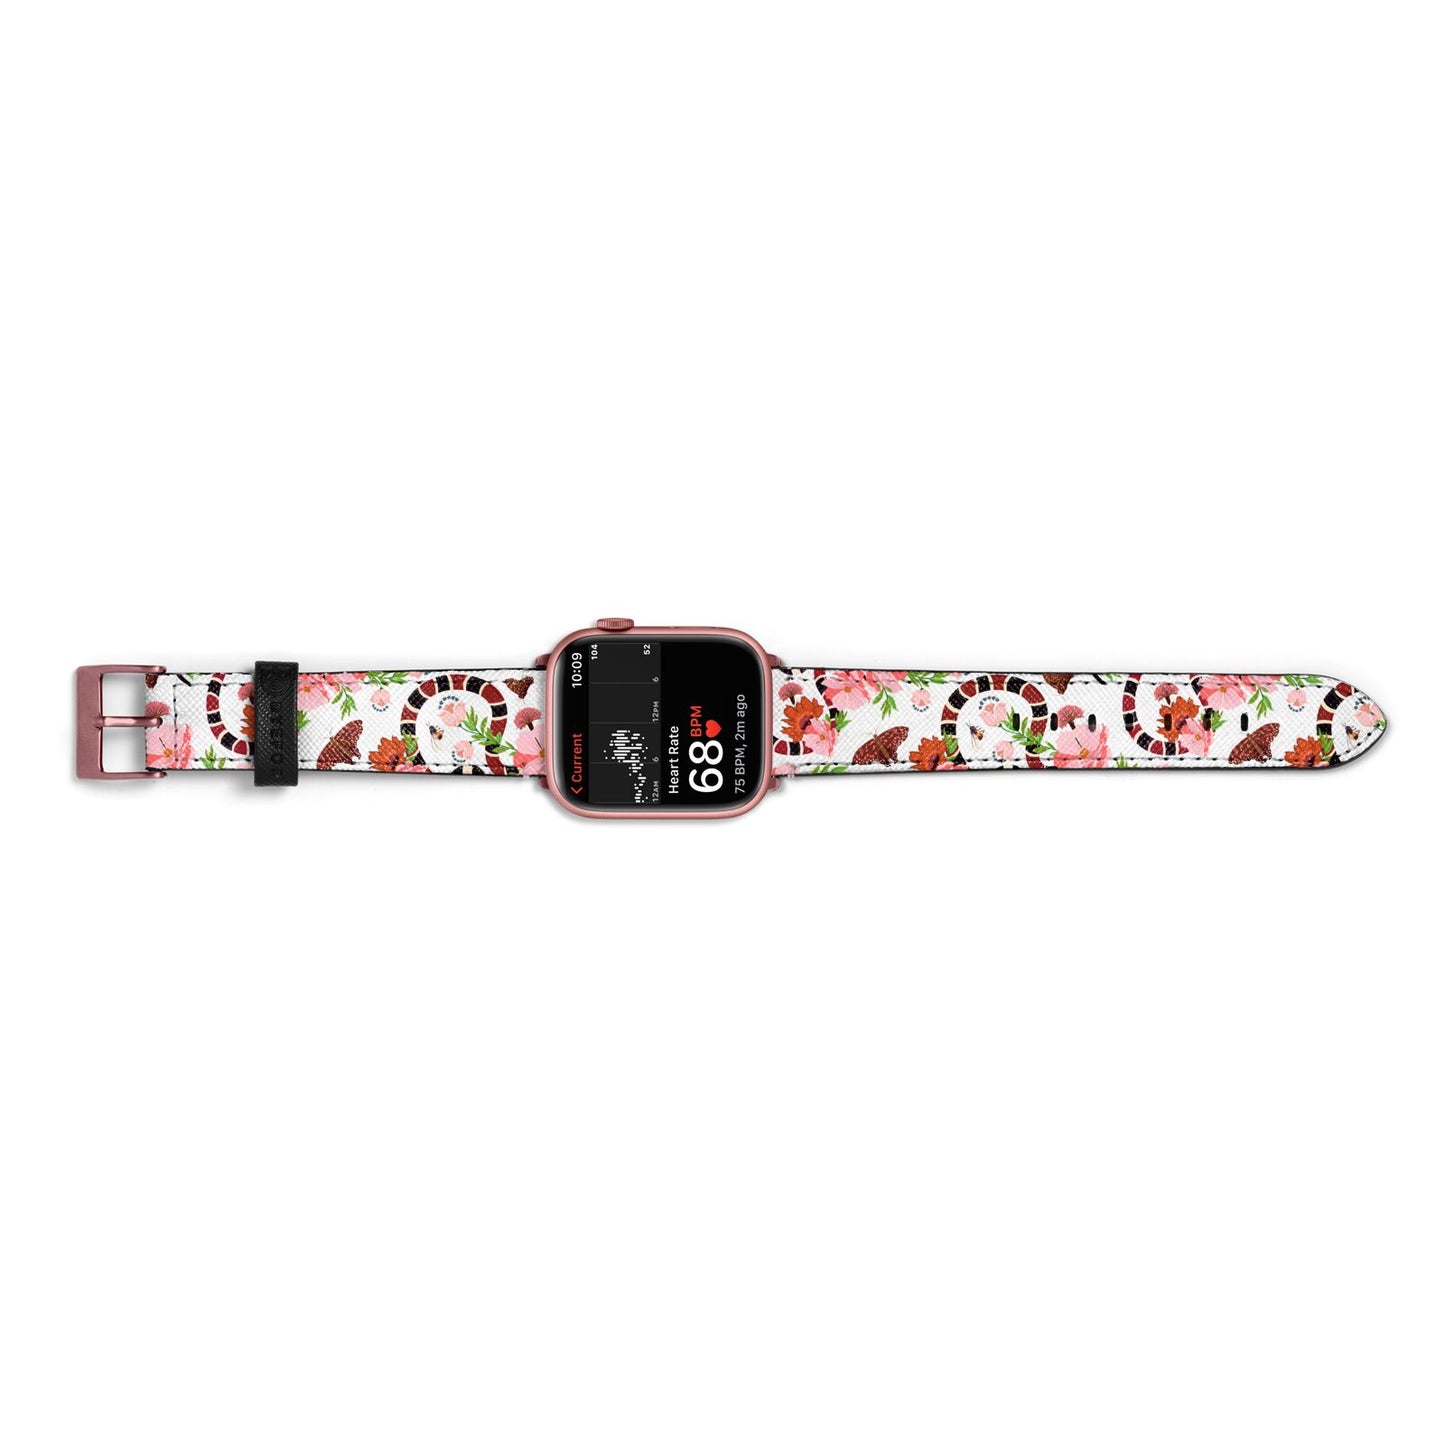 Floral Snake Apple Watch Strap Size 38mm Landscape Image Rose Gold Hardware